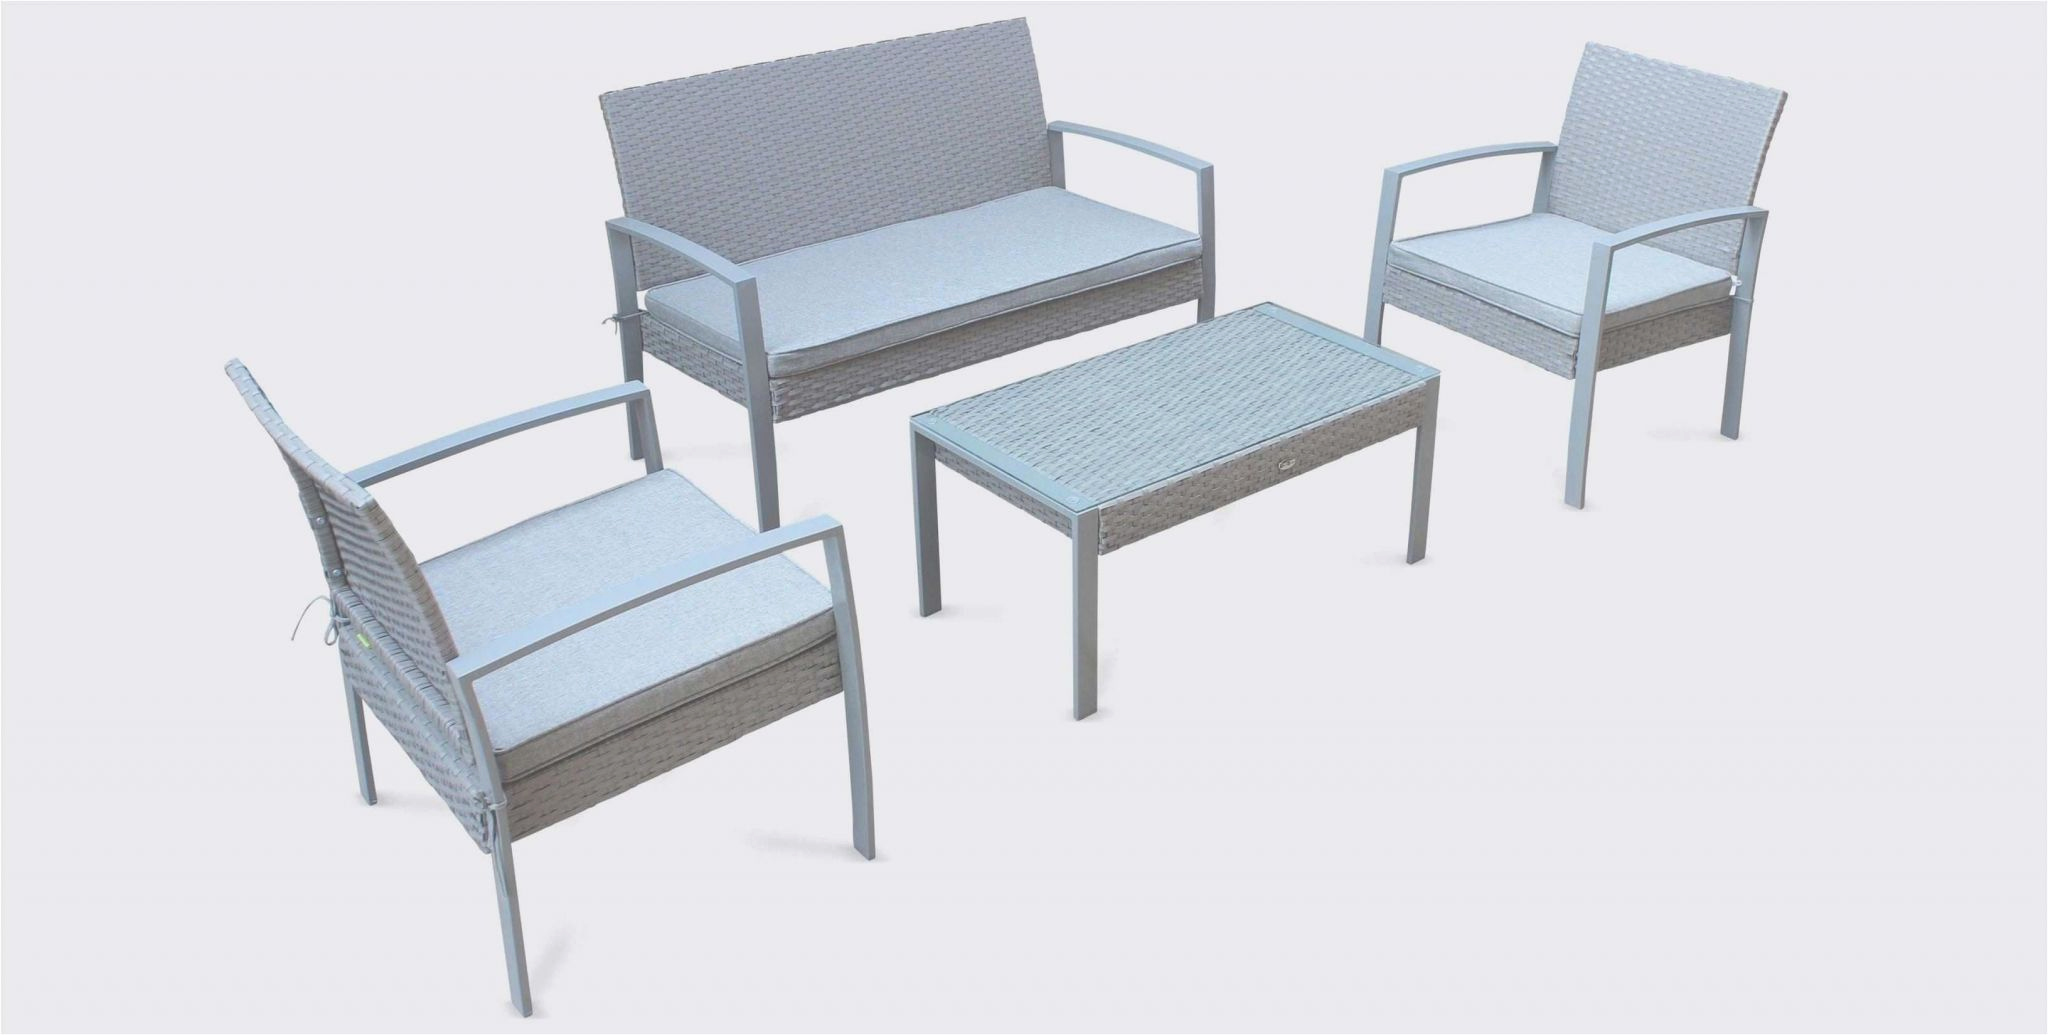 banc en metal nouveau meubles de jardin en teck ainsi que banc bois entree banc blanc of banc en metal